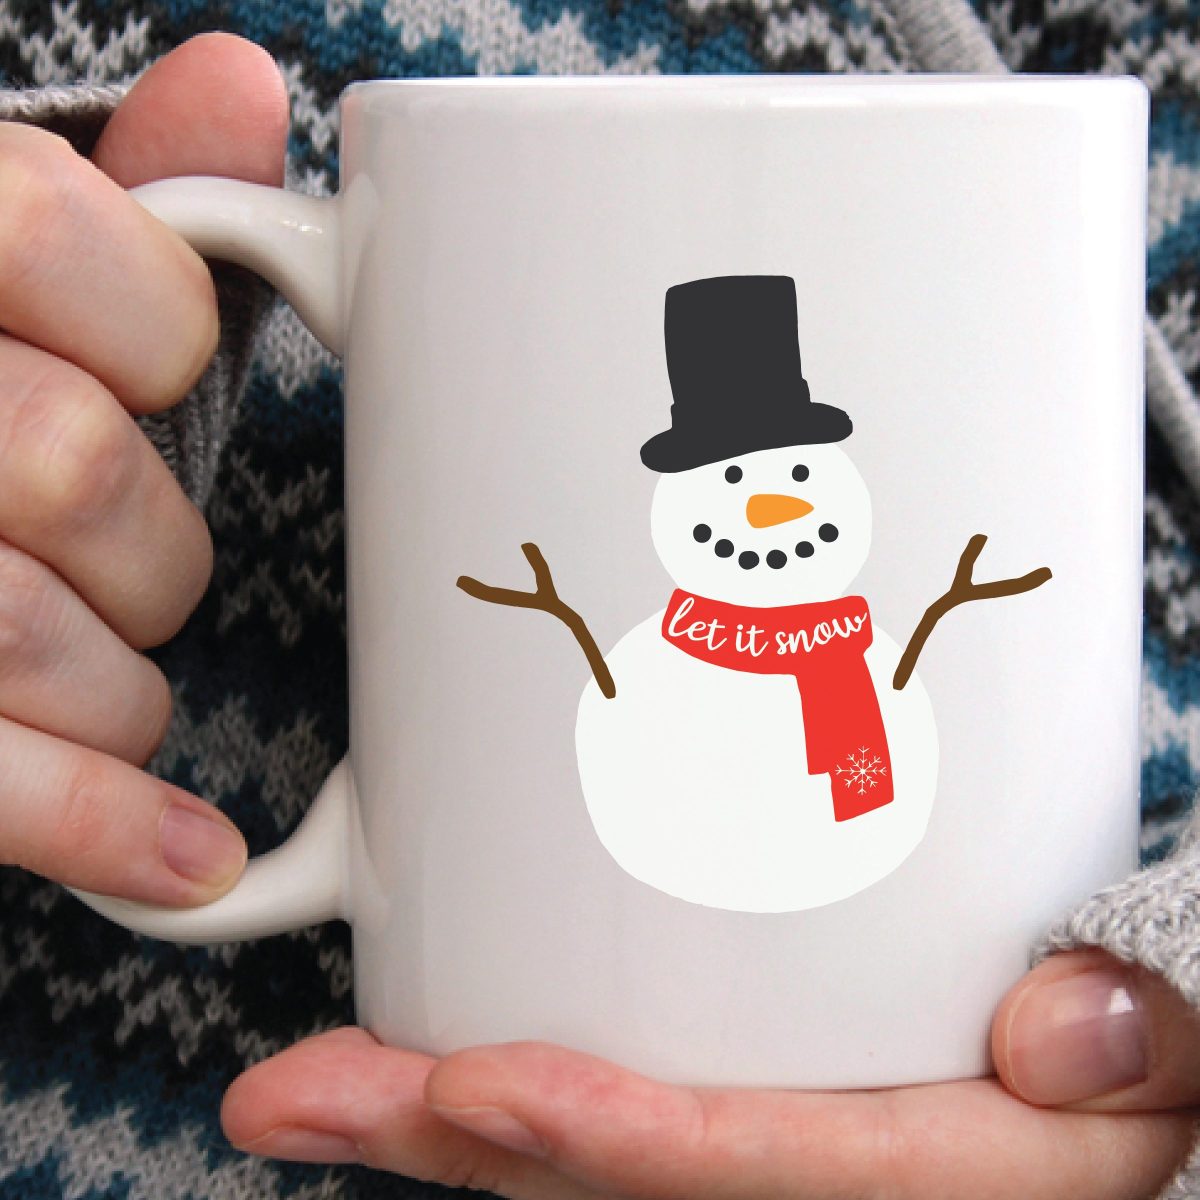 Winter Coffee Mug